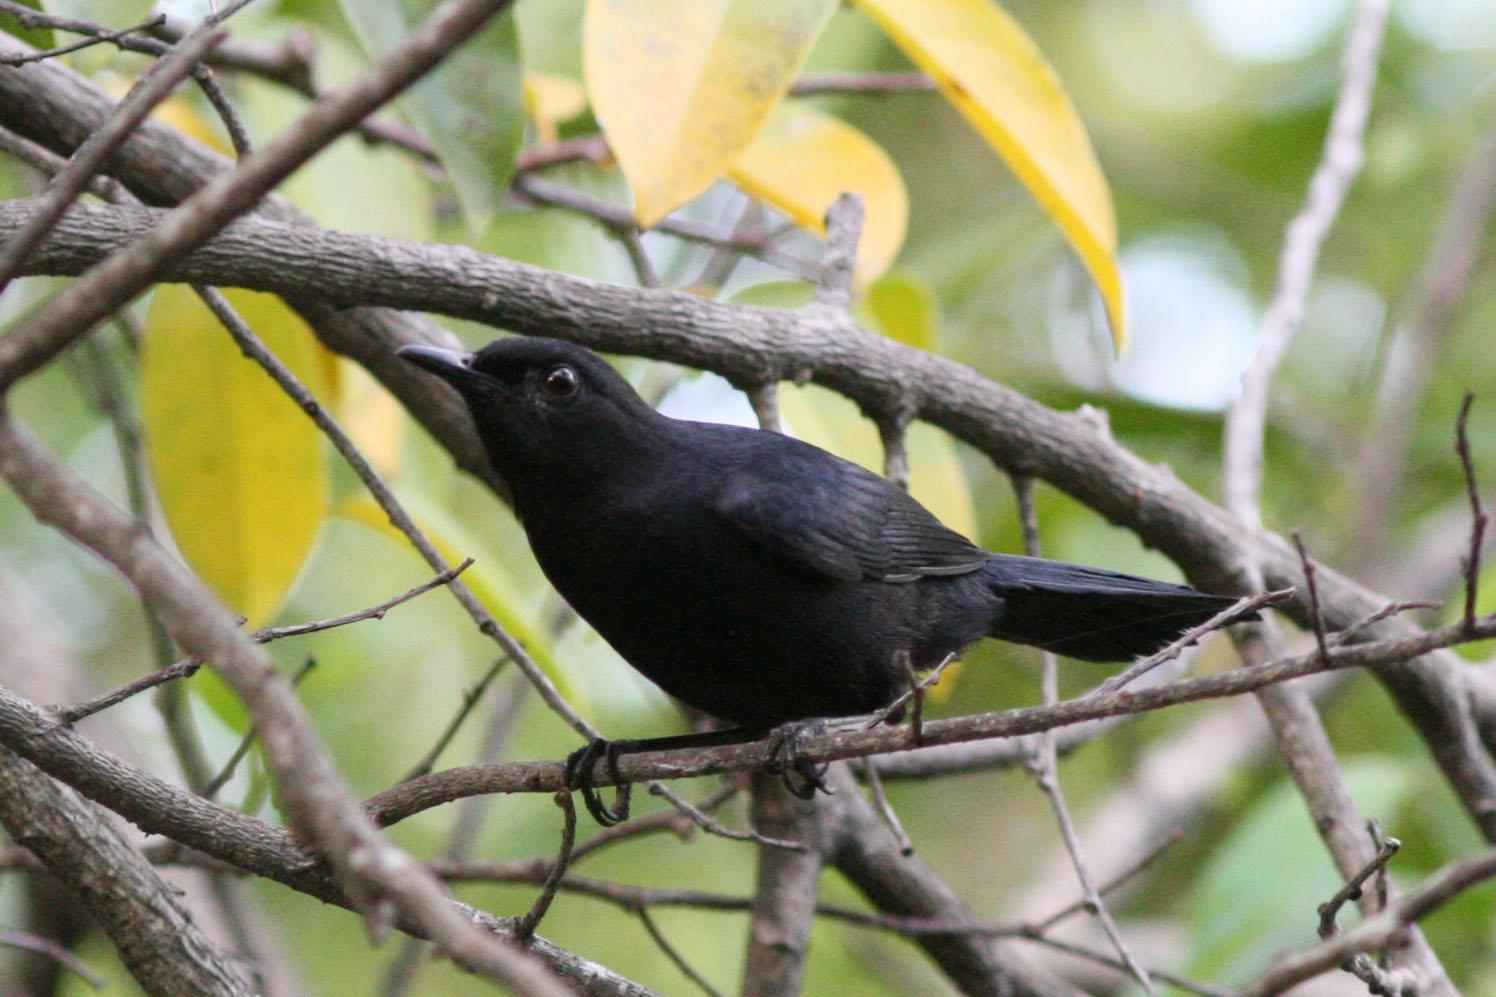 Black Catbird Photo by David Sarkozi